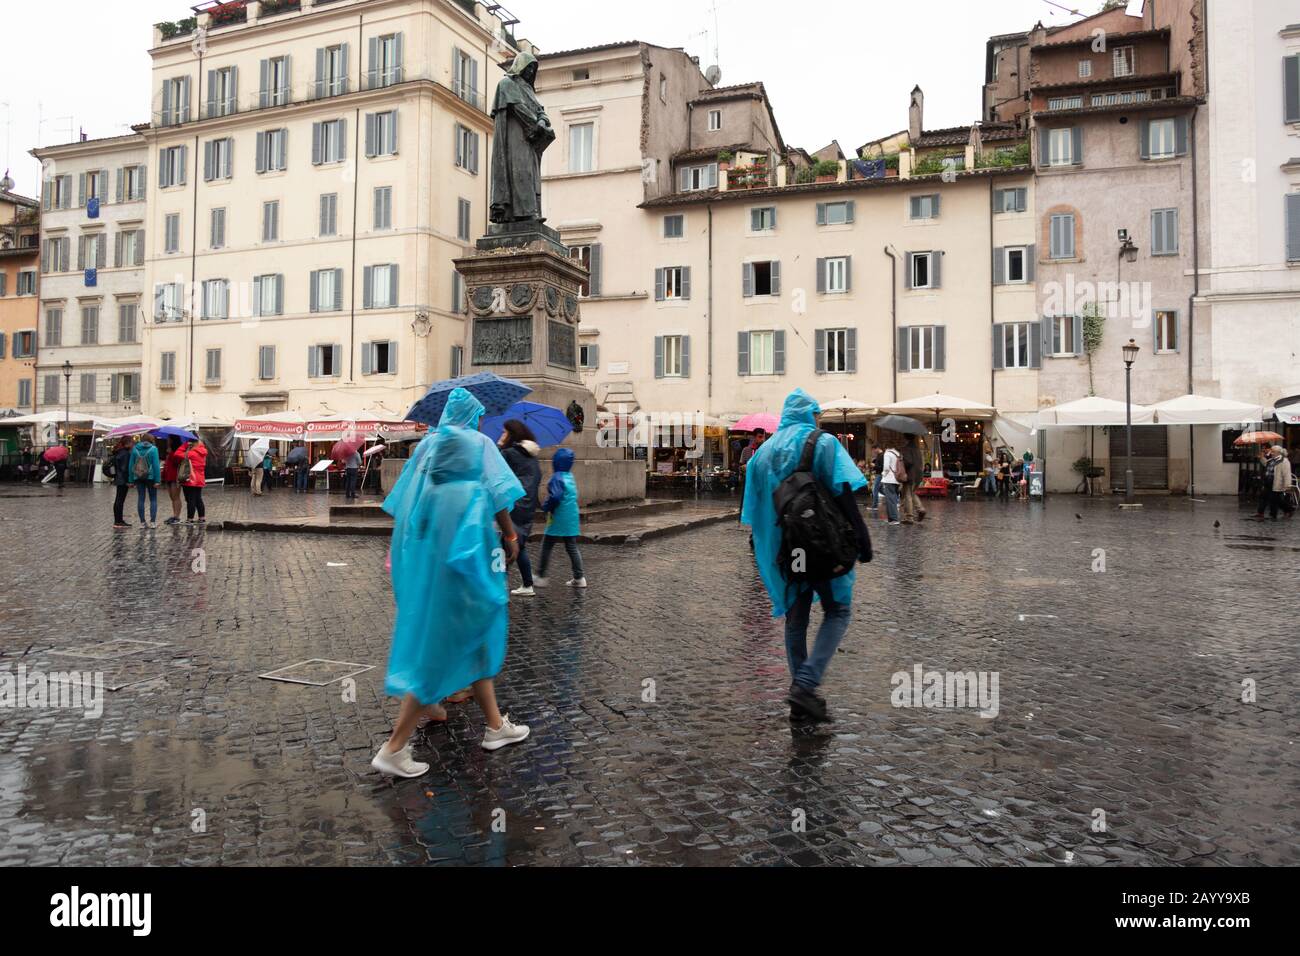 Les touristes marchant sous la pluie à travers une place de pierres de galets à Rome Italie Banque D'Images